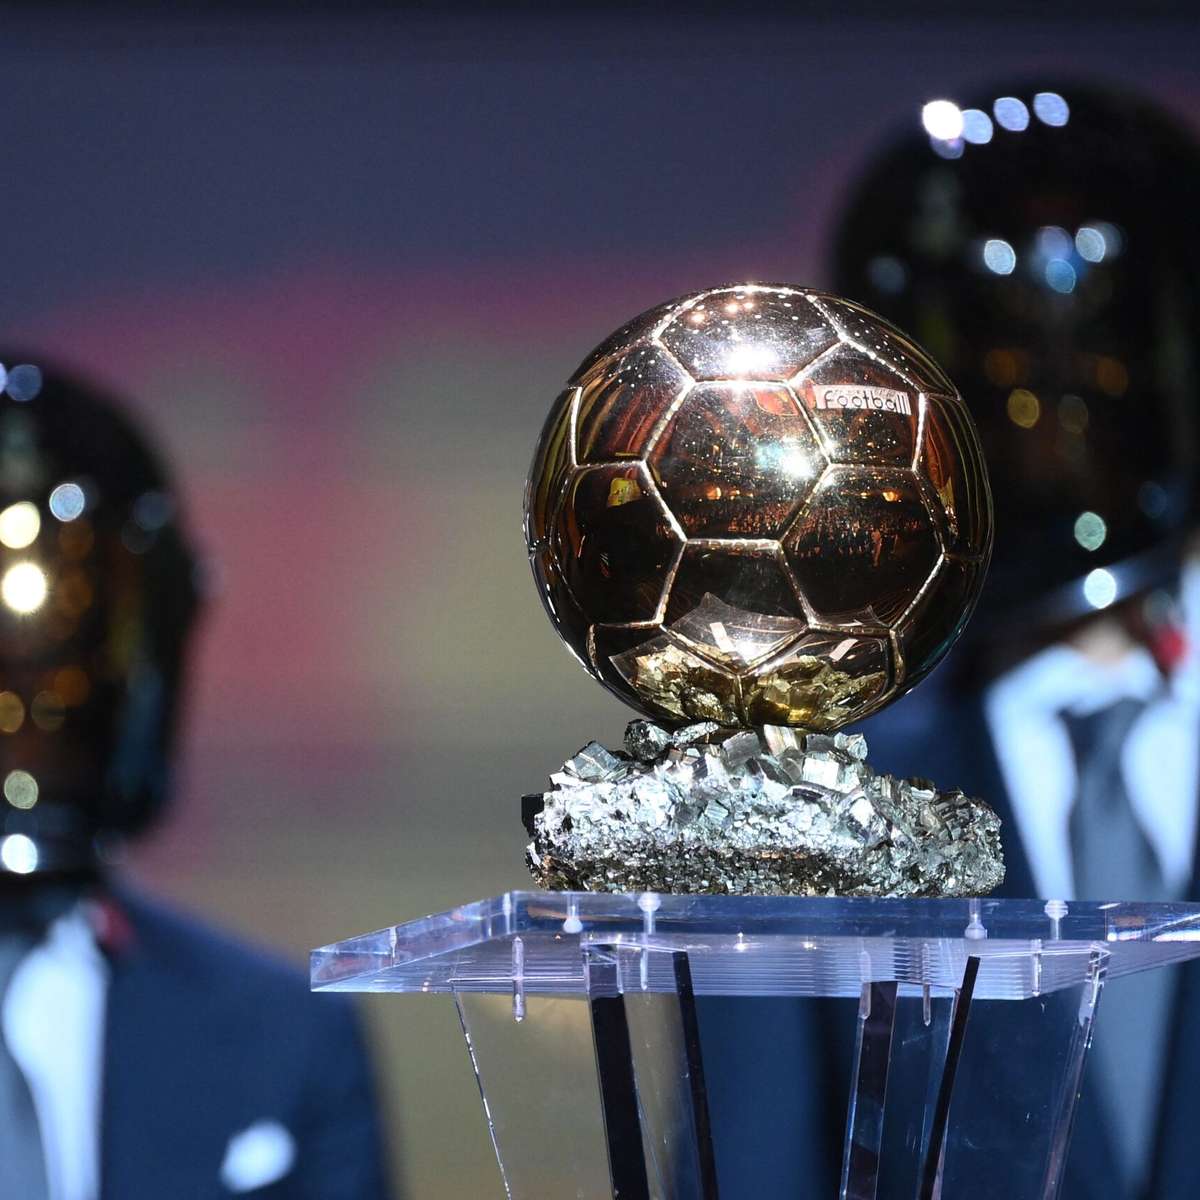 Os 10 finalistas do Troféu Yashin, prêmio de melhor goleiro em 2023 da  France Football